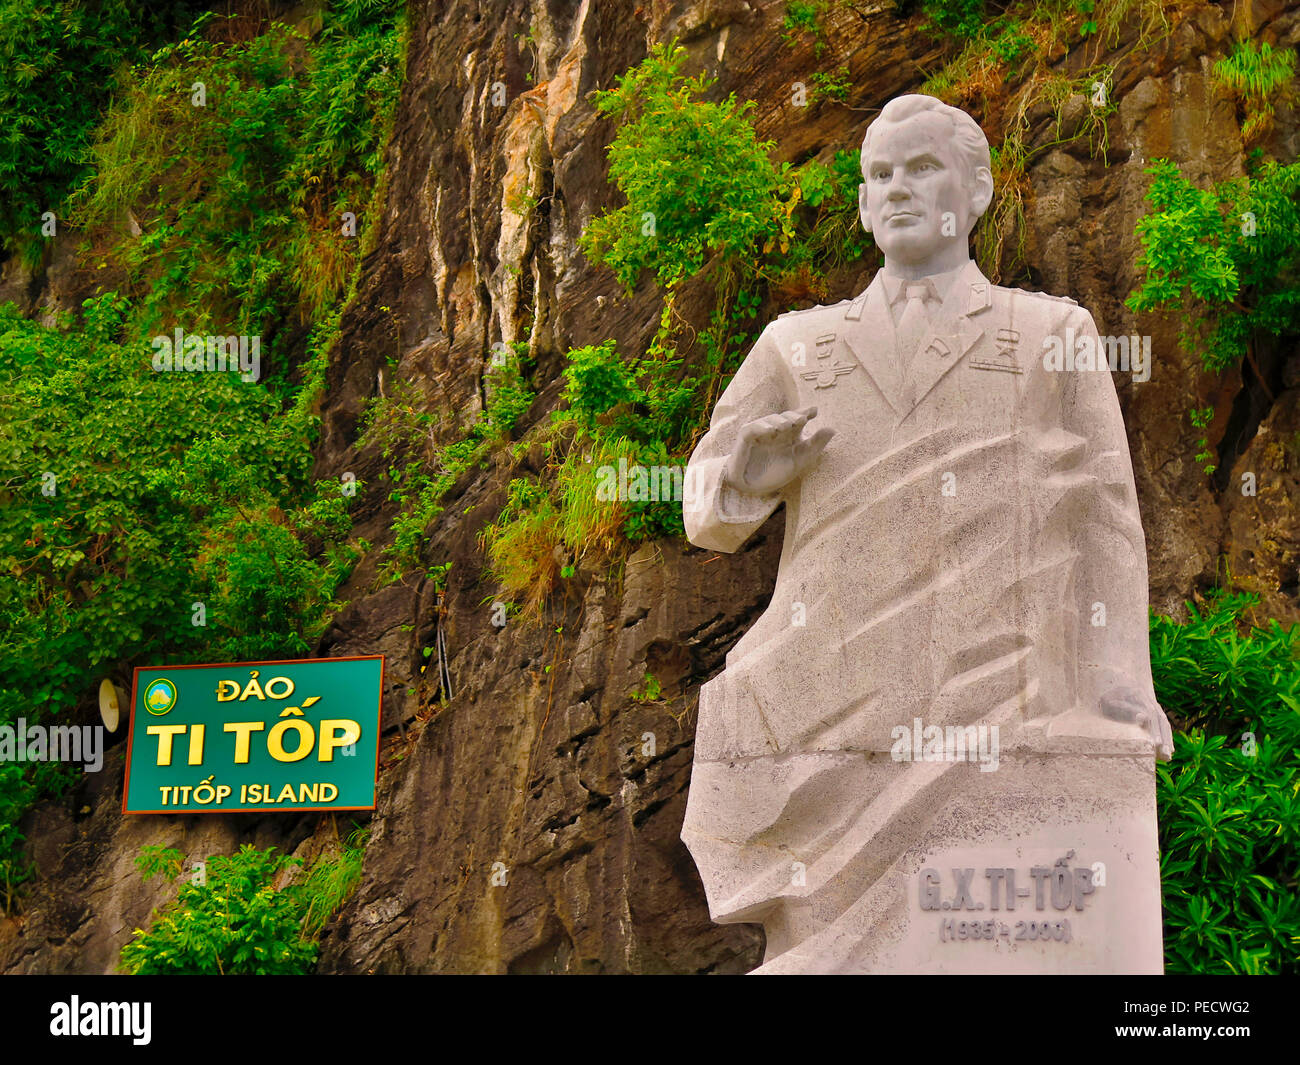 Statua Gherman Titov, Titop-Insel, Halong-Bucht, Vietnam, tedesco Titow Foto Stock